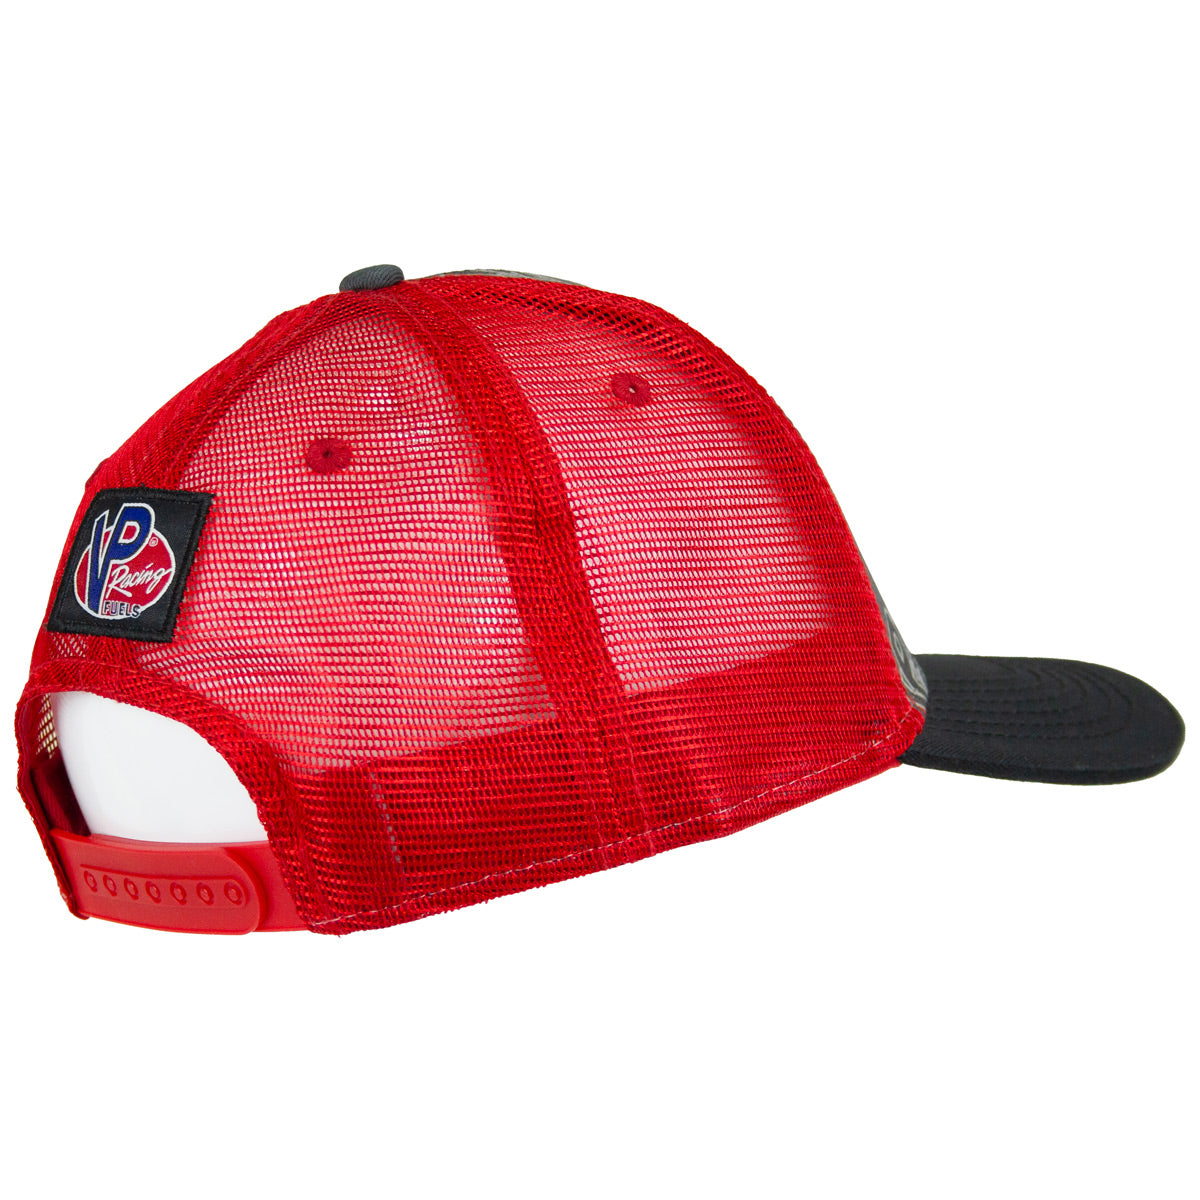 VP Racing Repeating Logo Hat - Black / Red